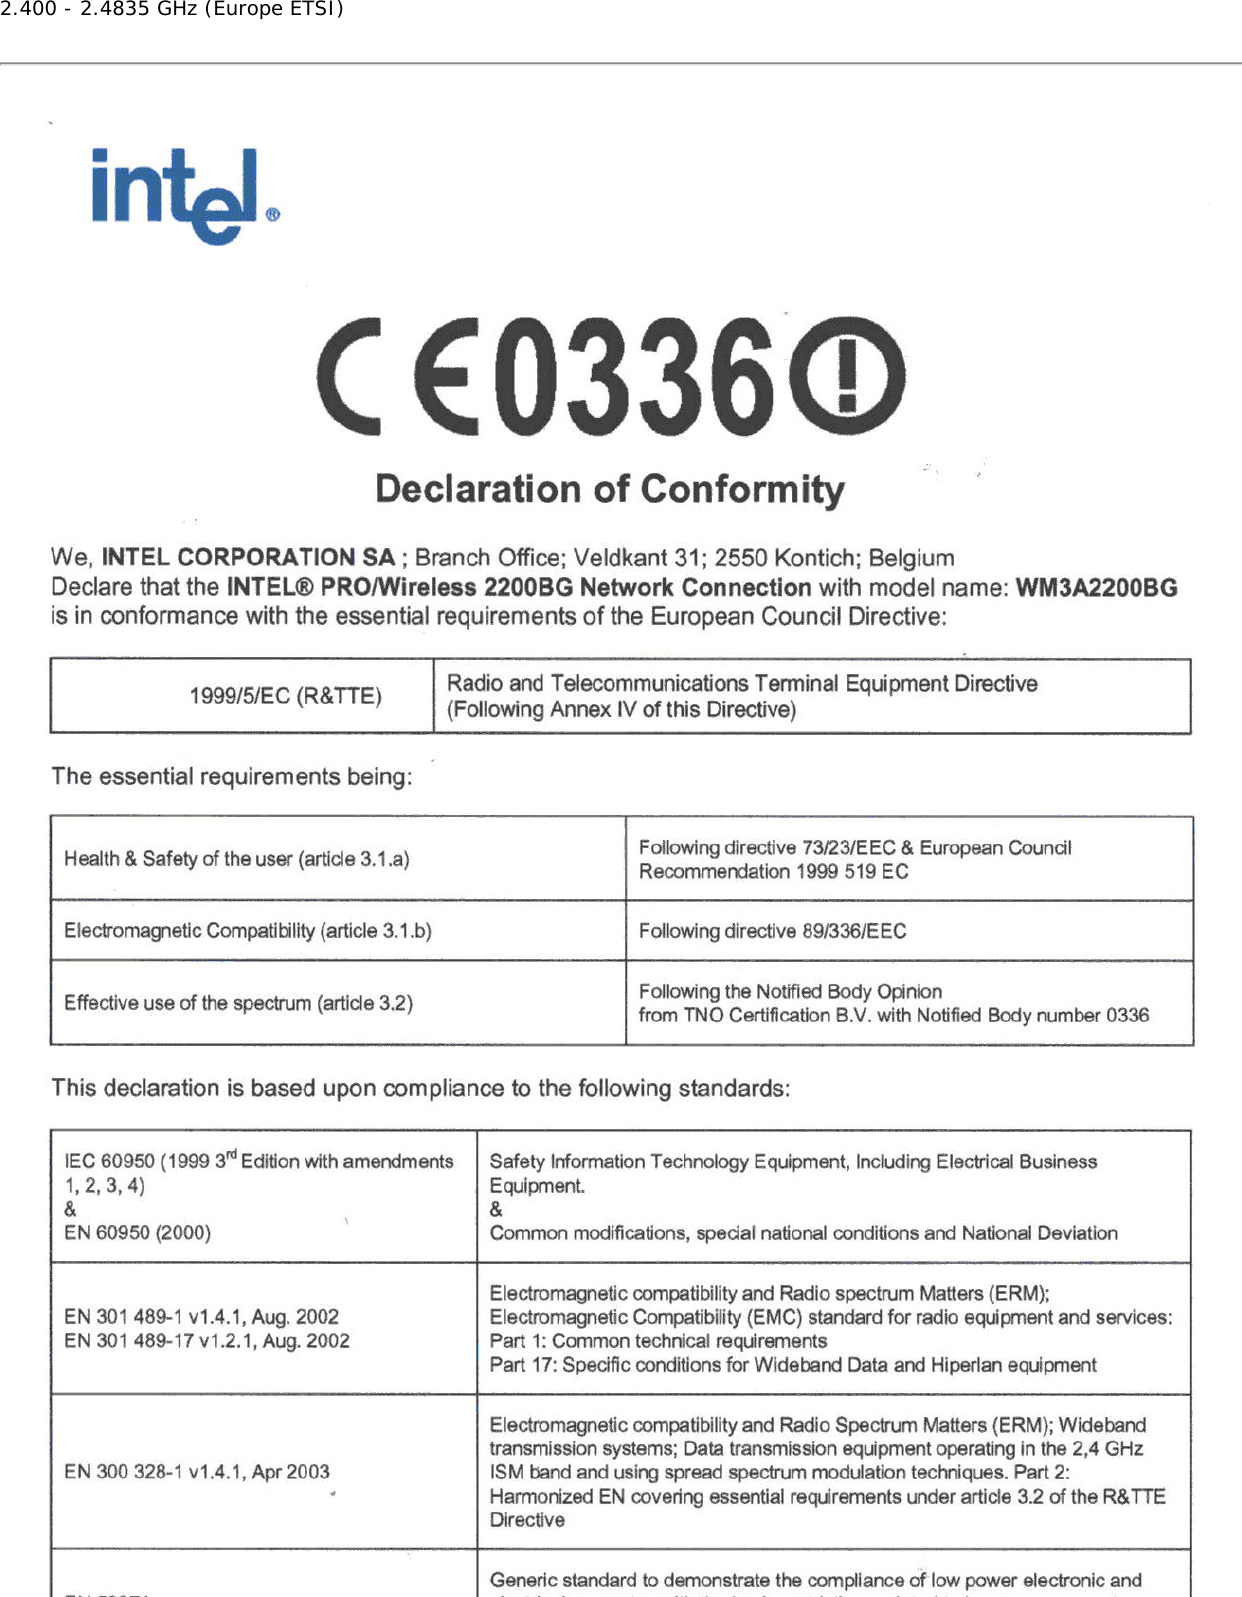 2.400 - 2.4835 GHz (Europe ETSI)